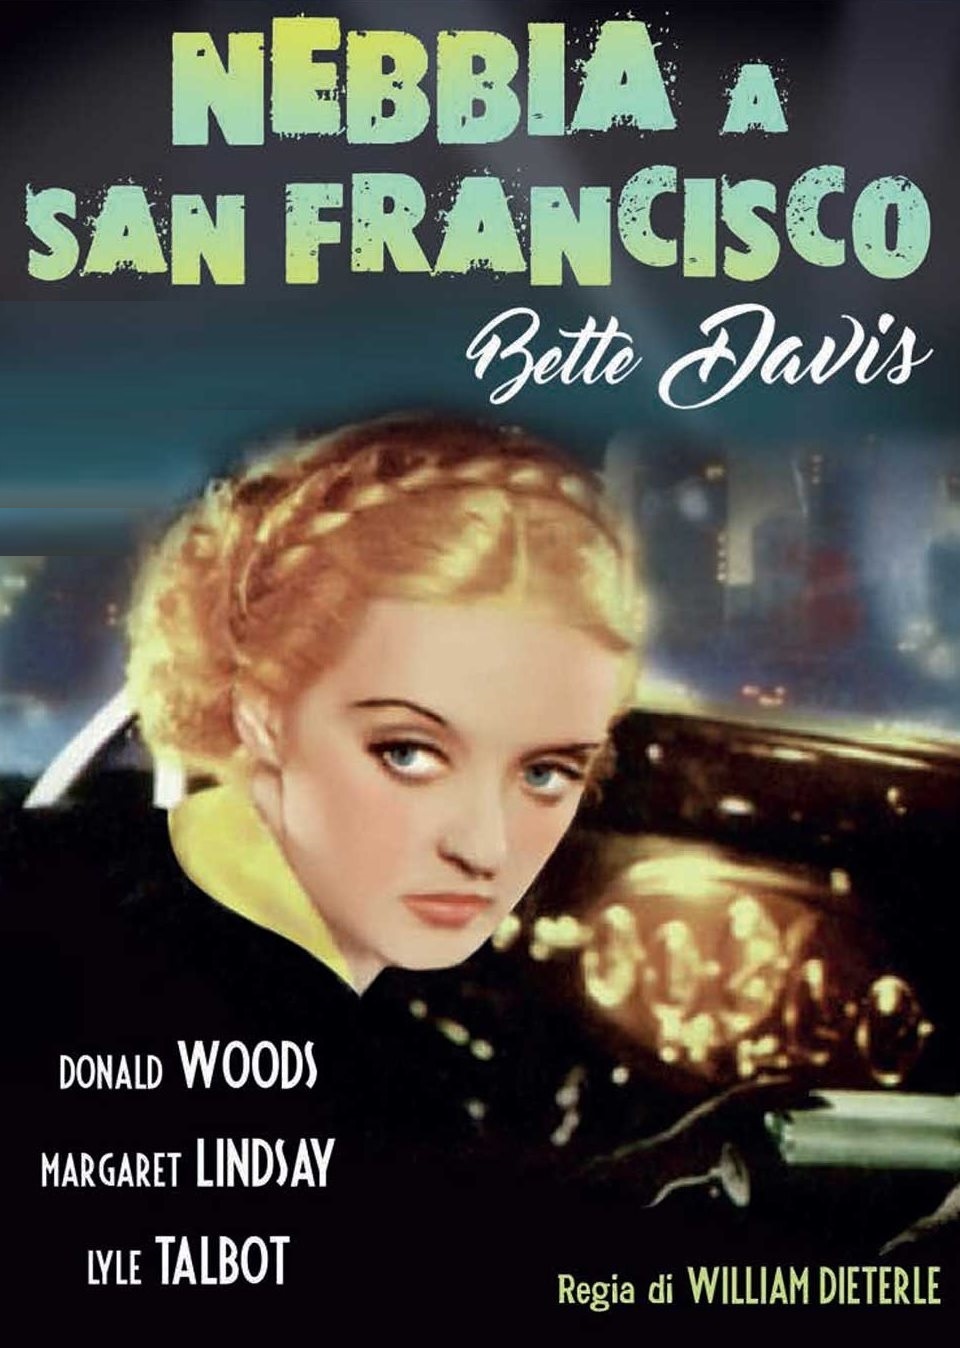 Nebbia a San Francisco [B/N] [HD] (1934)